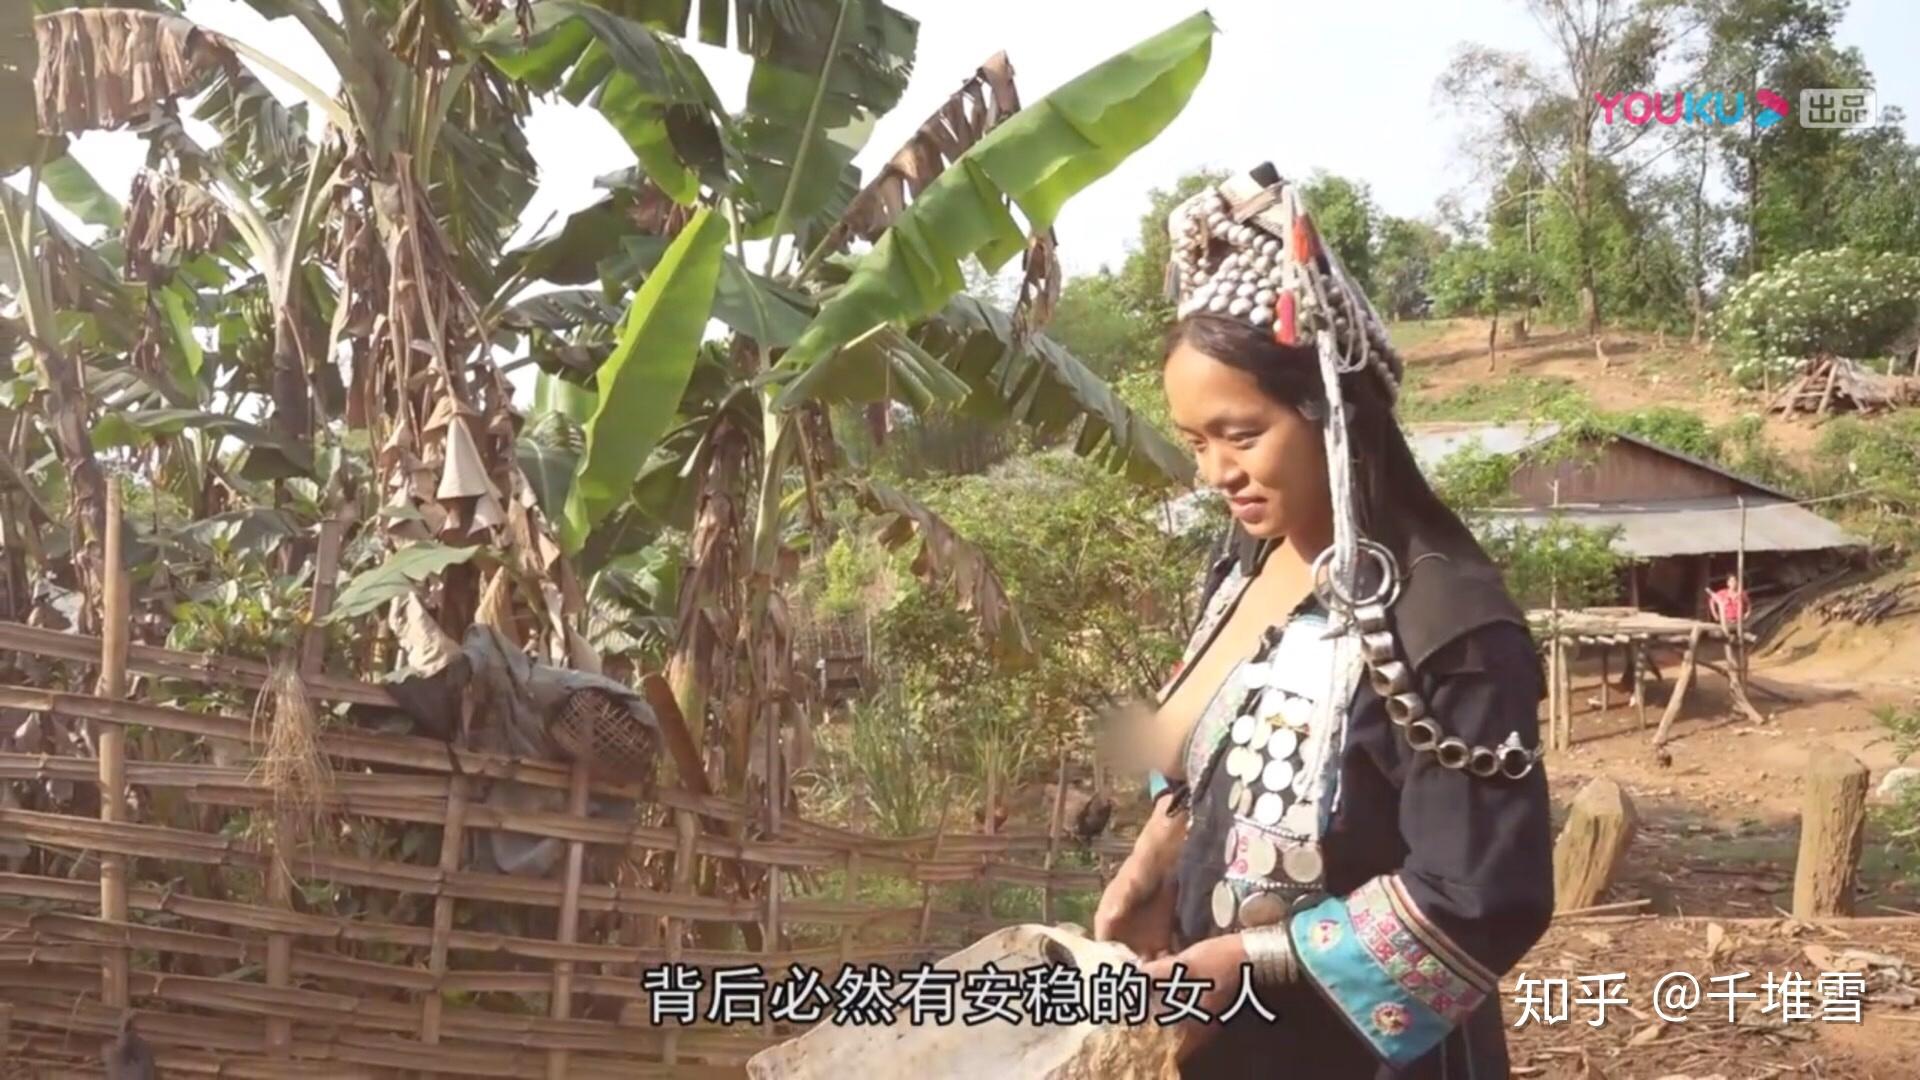 老挝阿卡族妇女图片